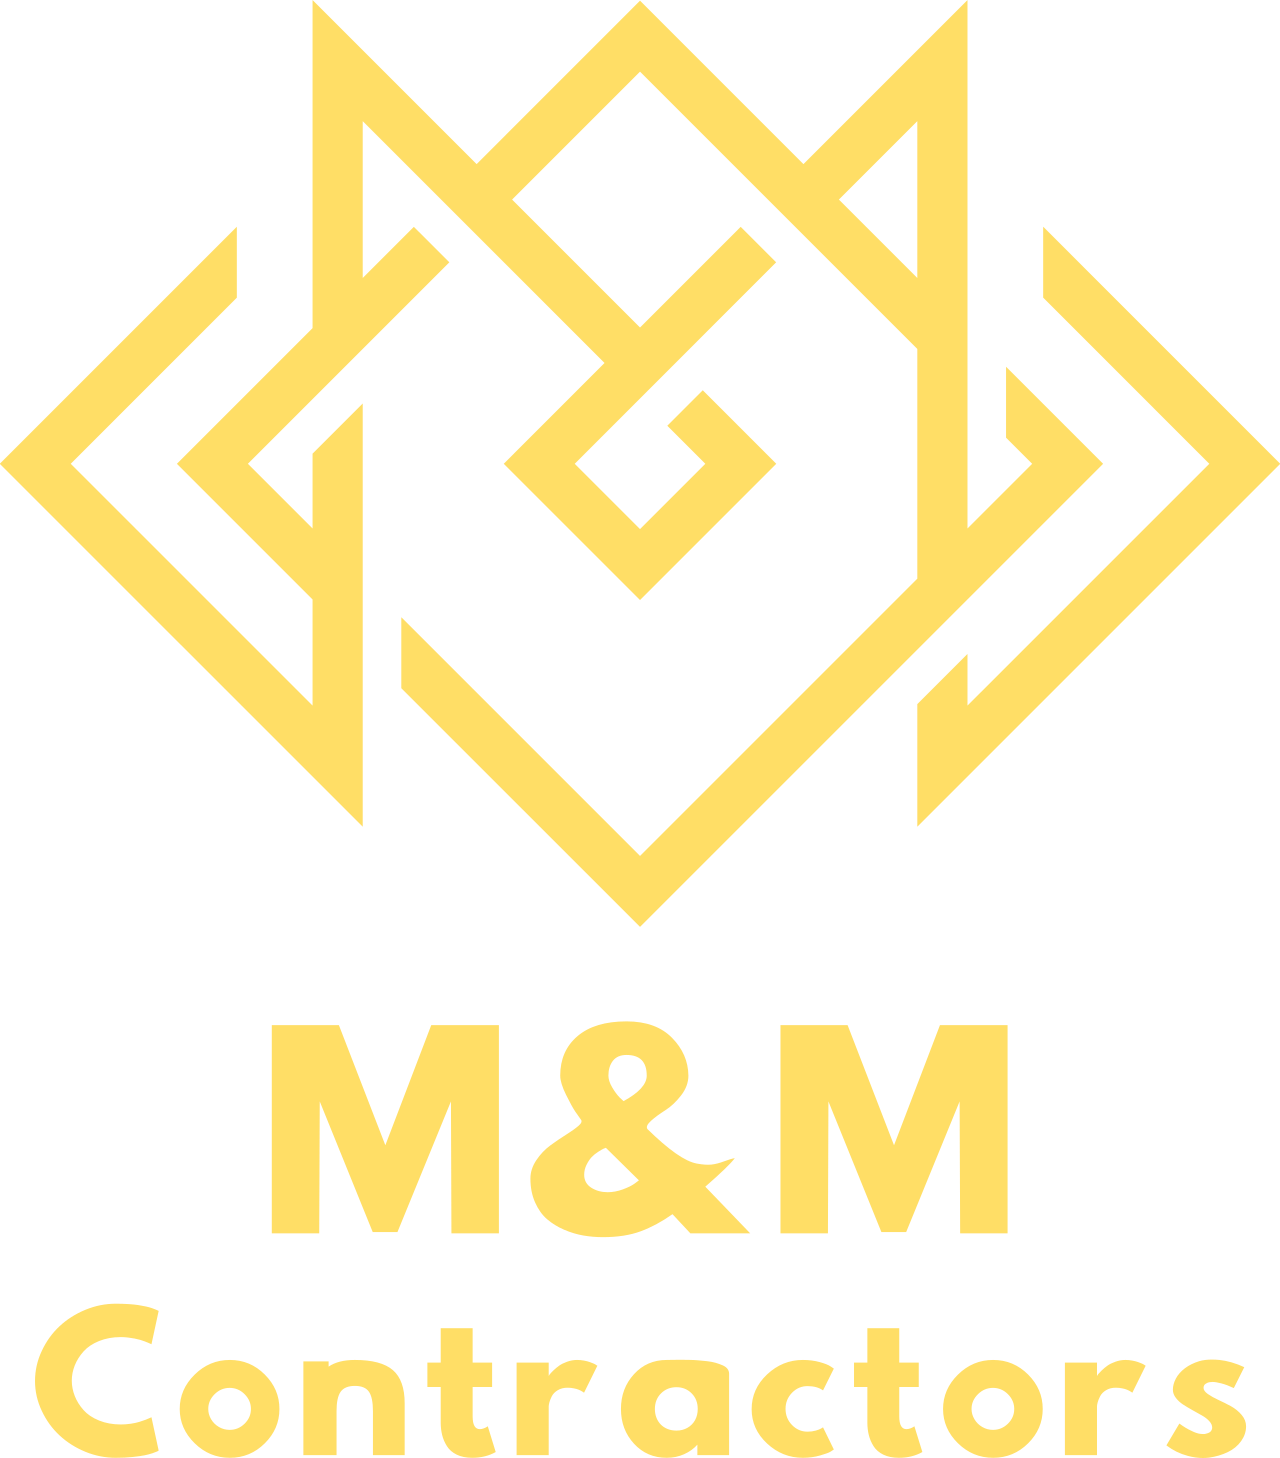 M&M's web page